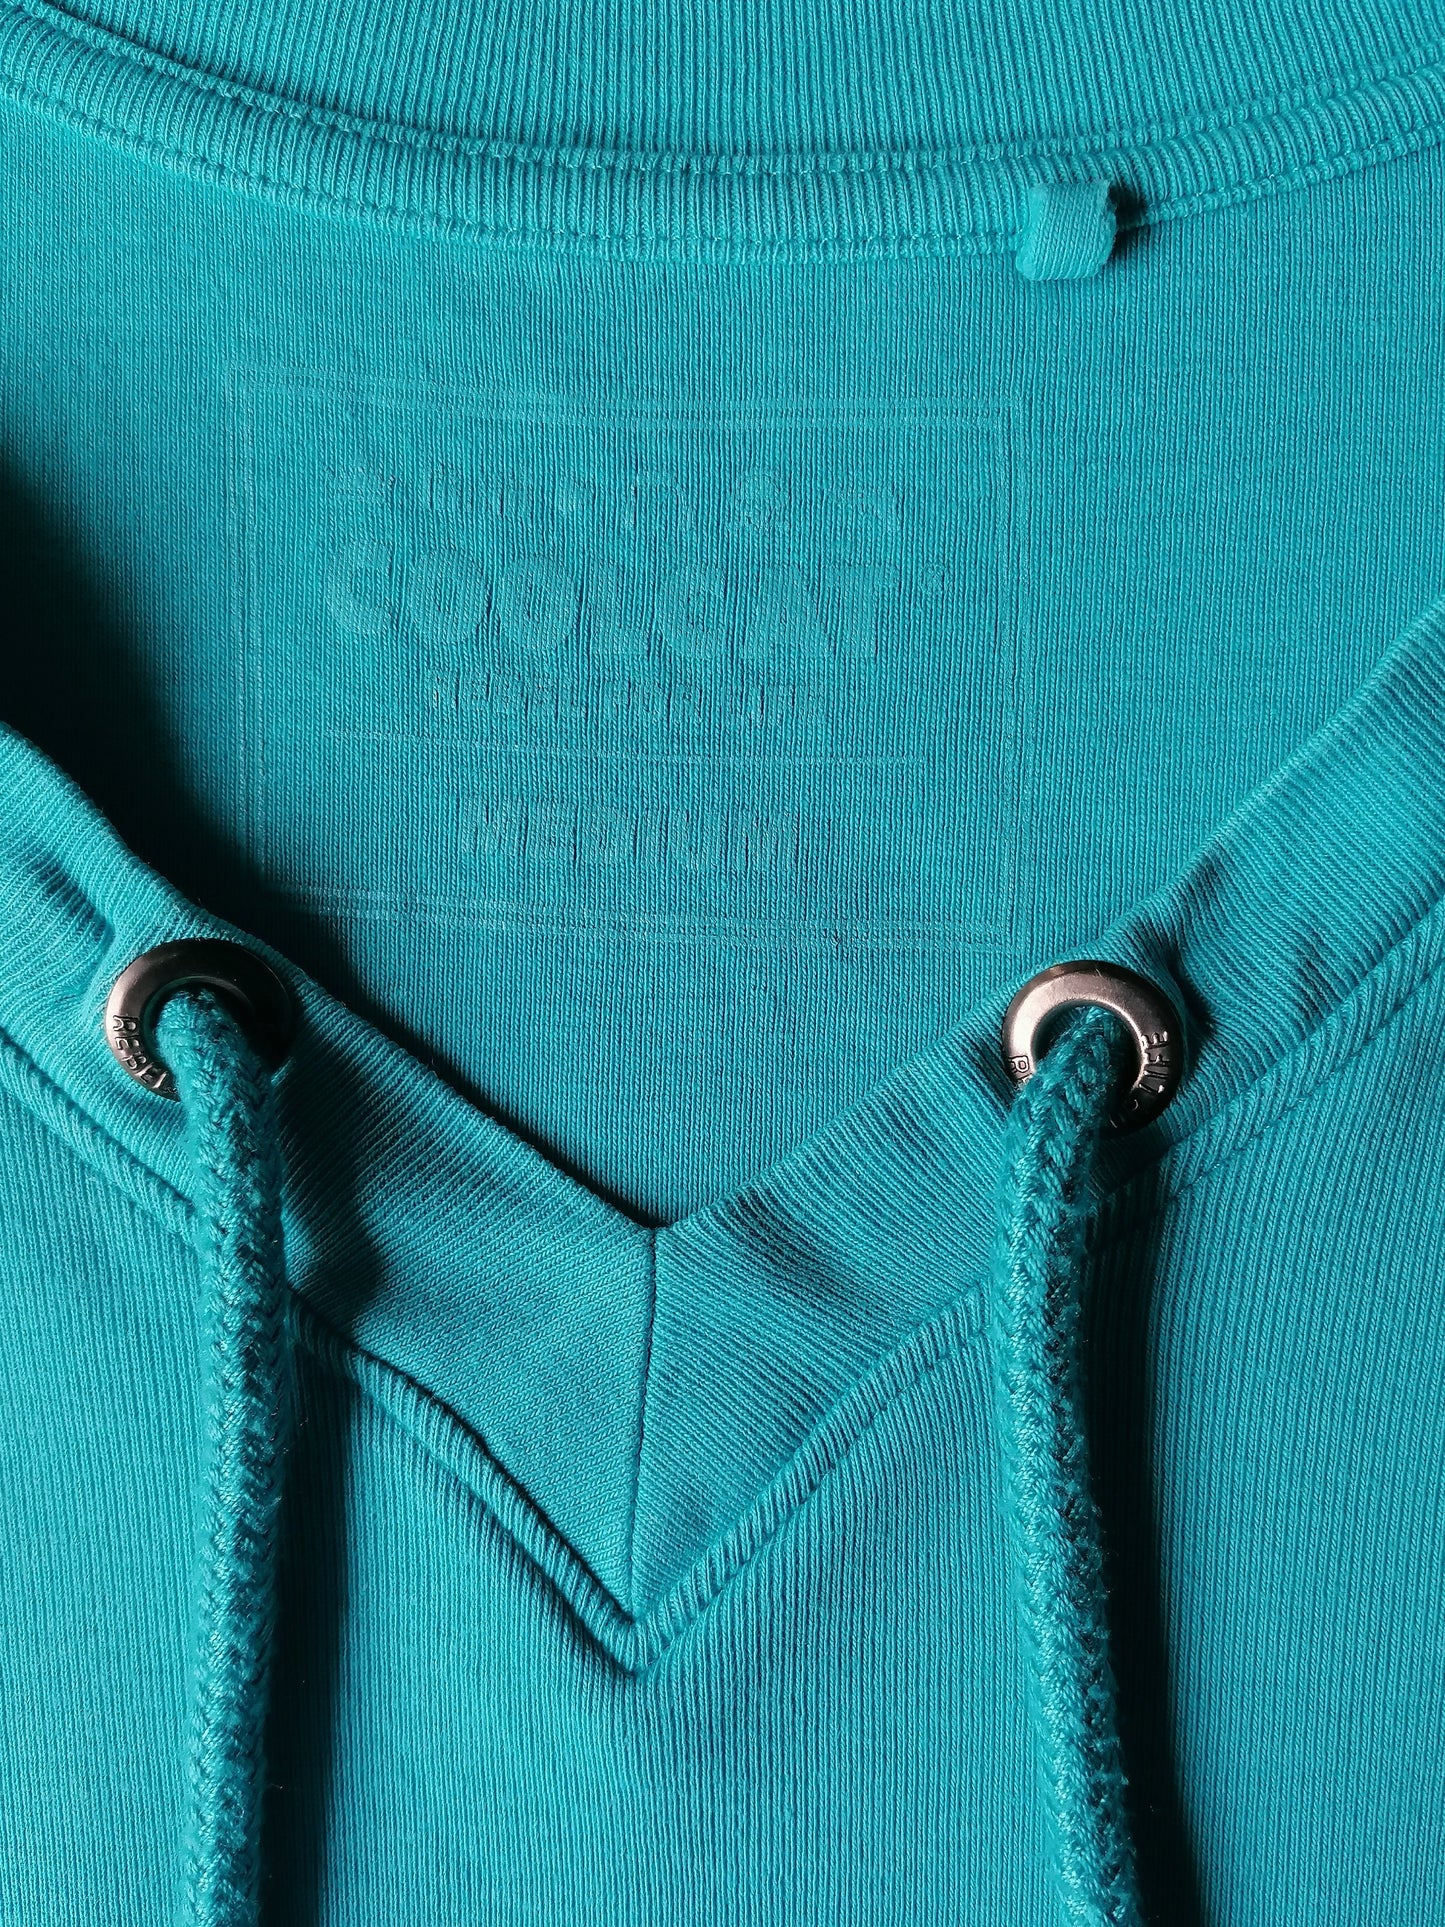 Coolcat-Hemd mit V-Ausschnitt und Saiten. Blau gefärbt. Größe M.